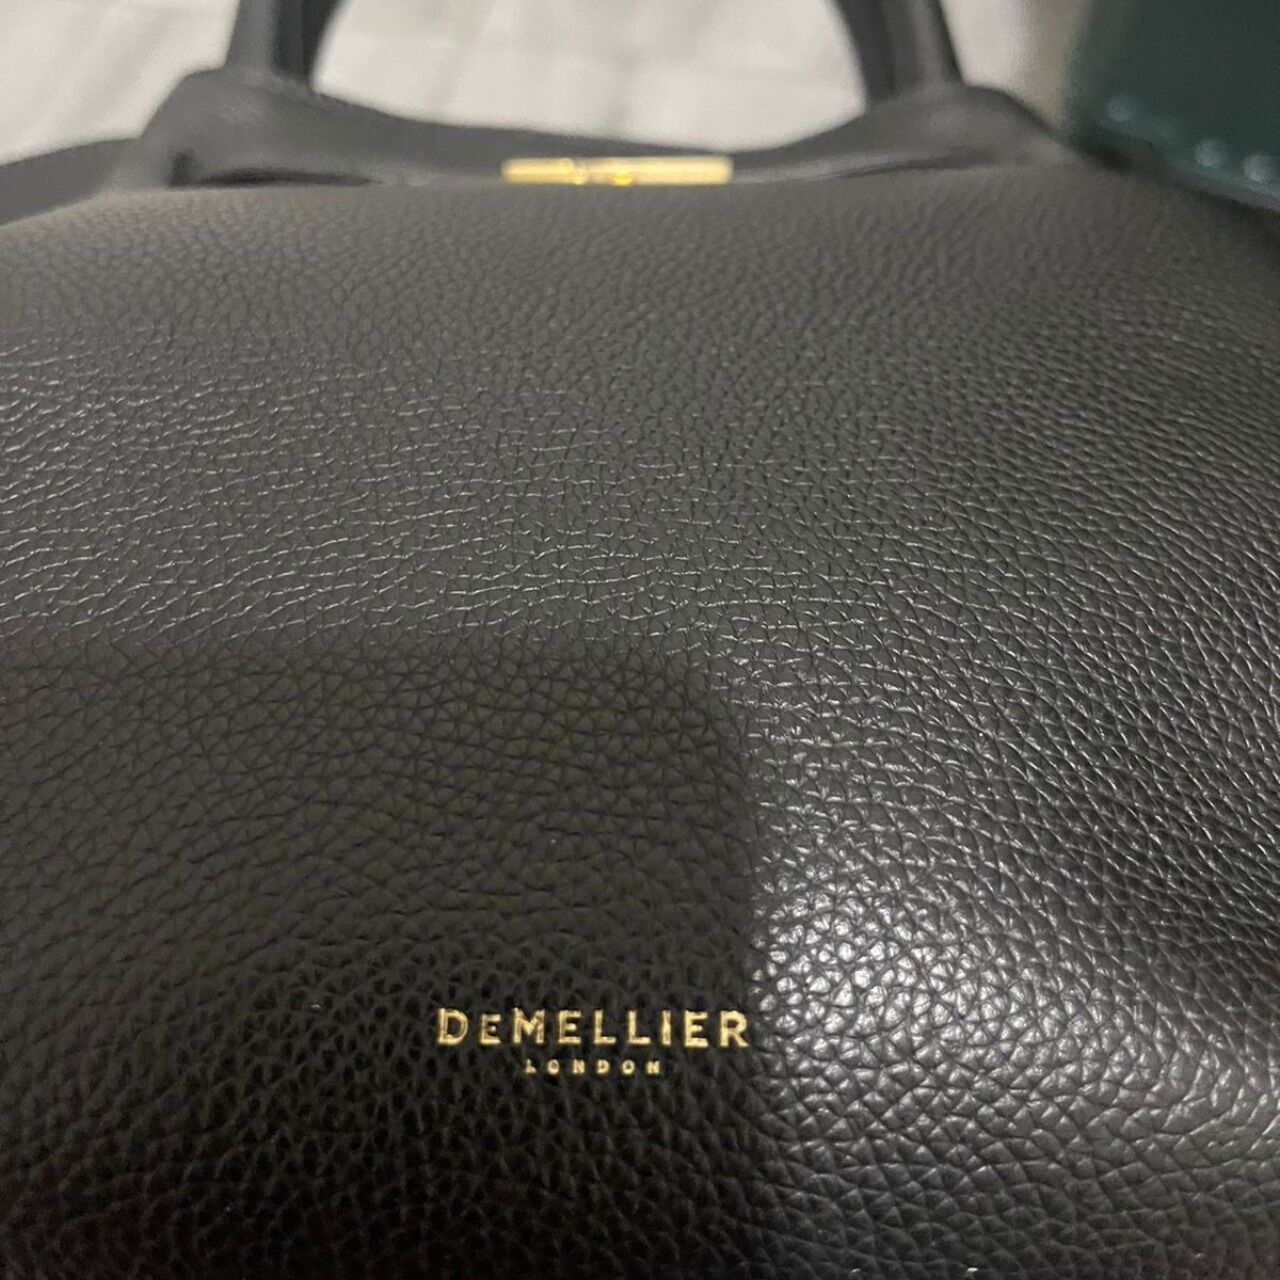 Demellier Black Tote Bag